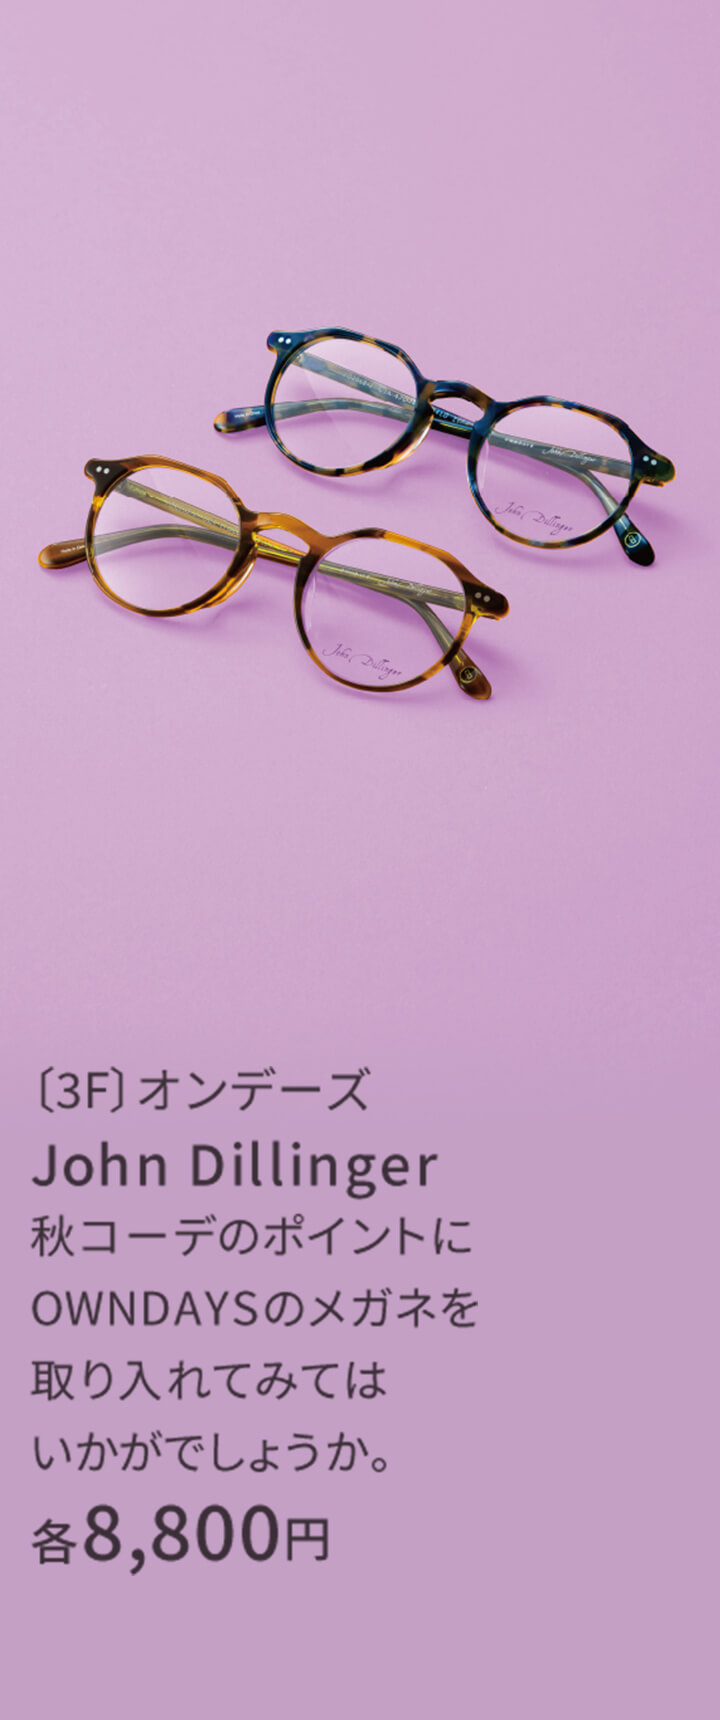 〔3F〕オンデーズ John Dillinger 秋コーデのポイントにOWNDAYSのメガネを取り入れてみてはいかがでしょうか。 8,800円